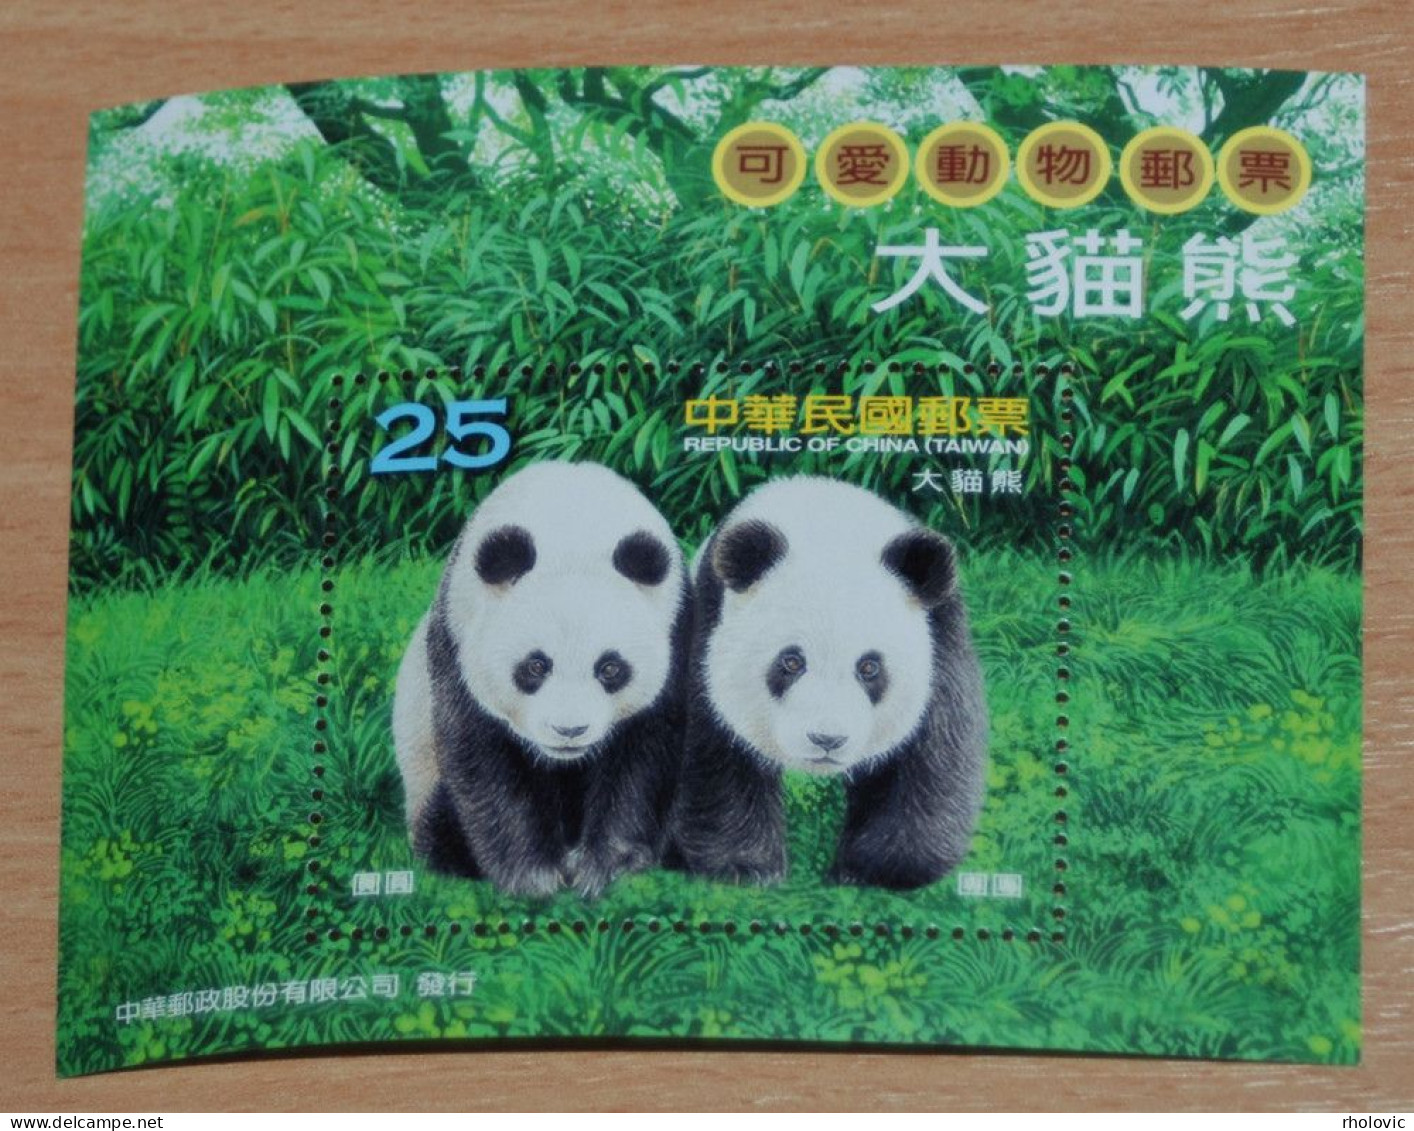 TAIWAN 2009, Panda, Bears, Animals, Fauna, Mi #B146, Souvenir Sheet, MNH** - Osos